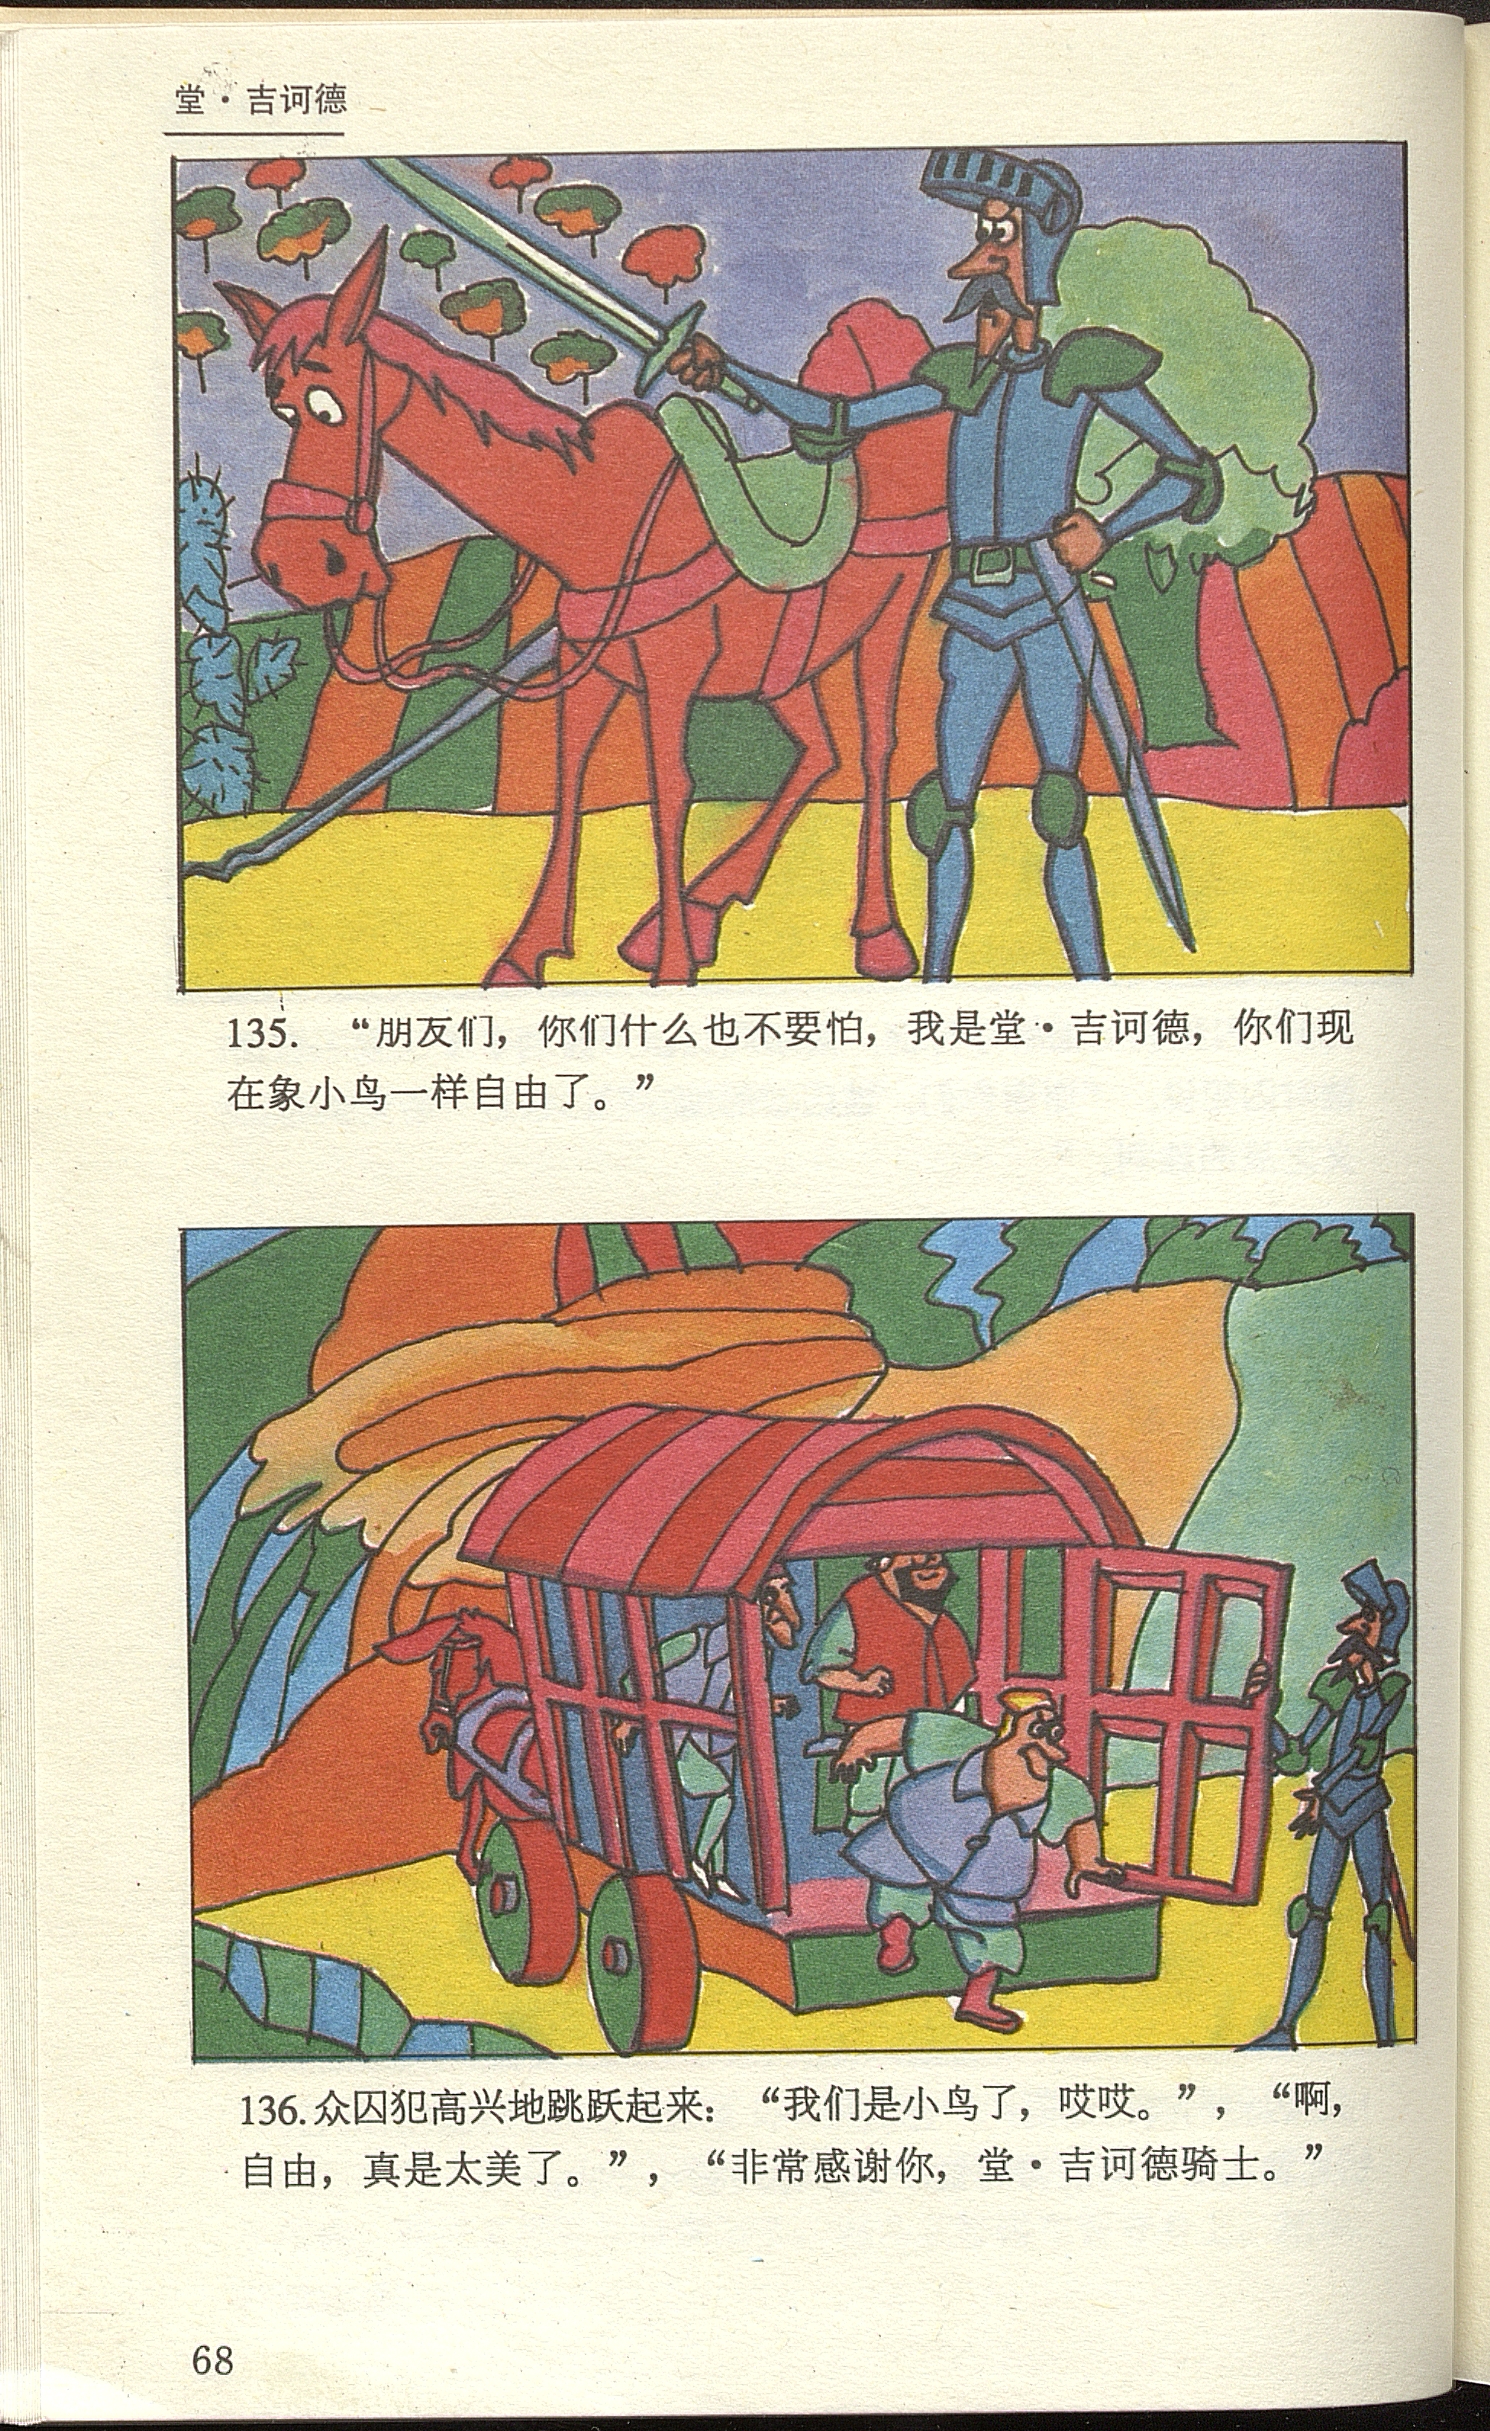 Don Quixote / adaptado por Jing Fang; dibujos Hua Ming Jiwen, Wang Jia, Zhang Honghui, Xing Hao Zhou Mingli.